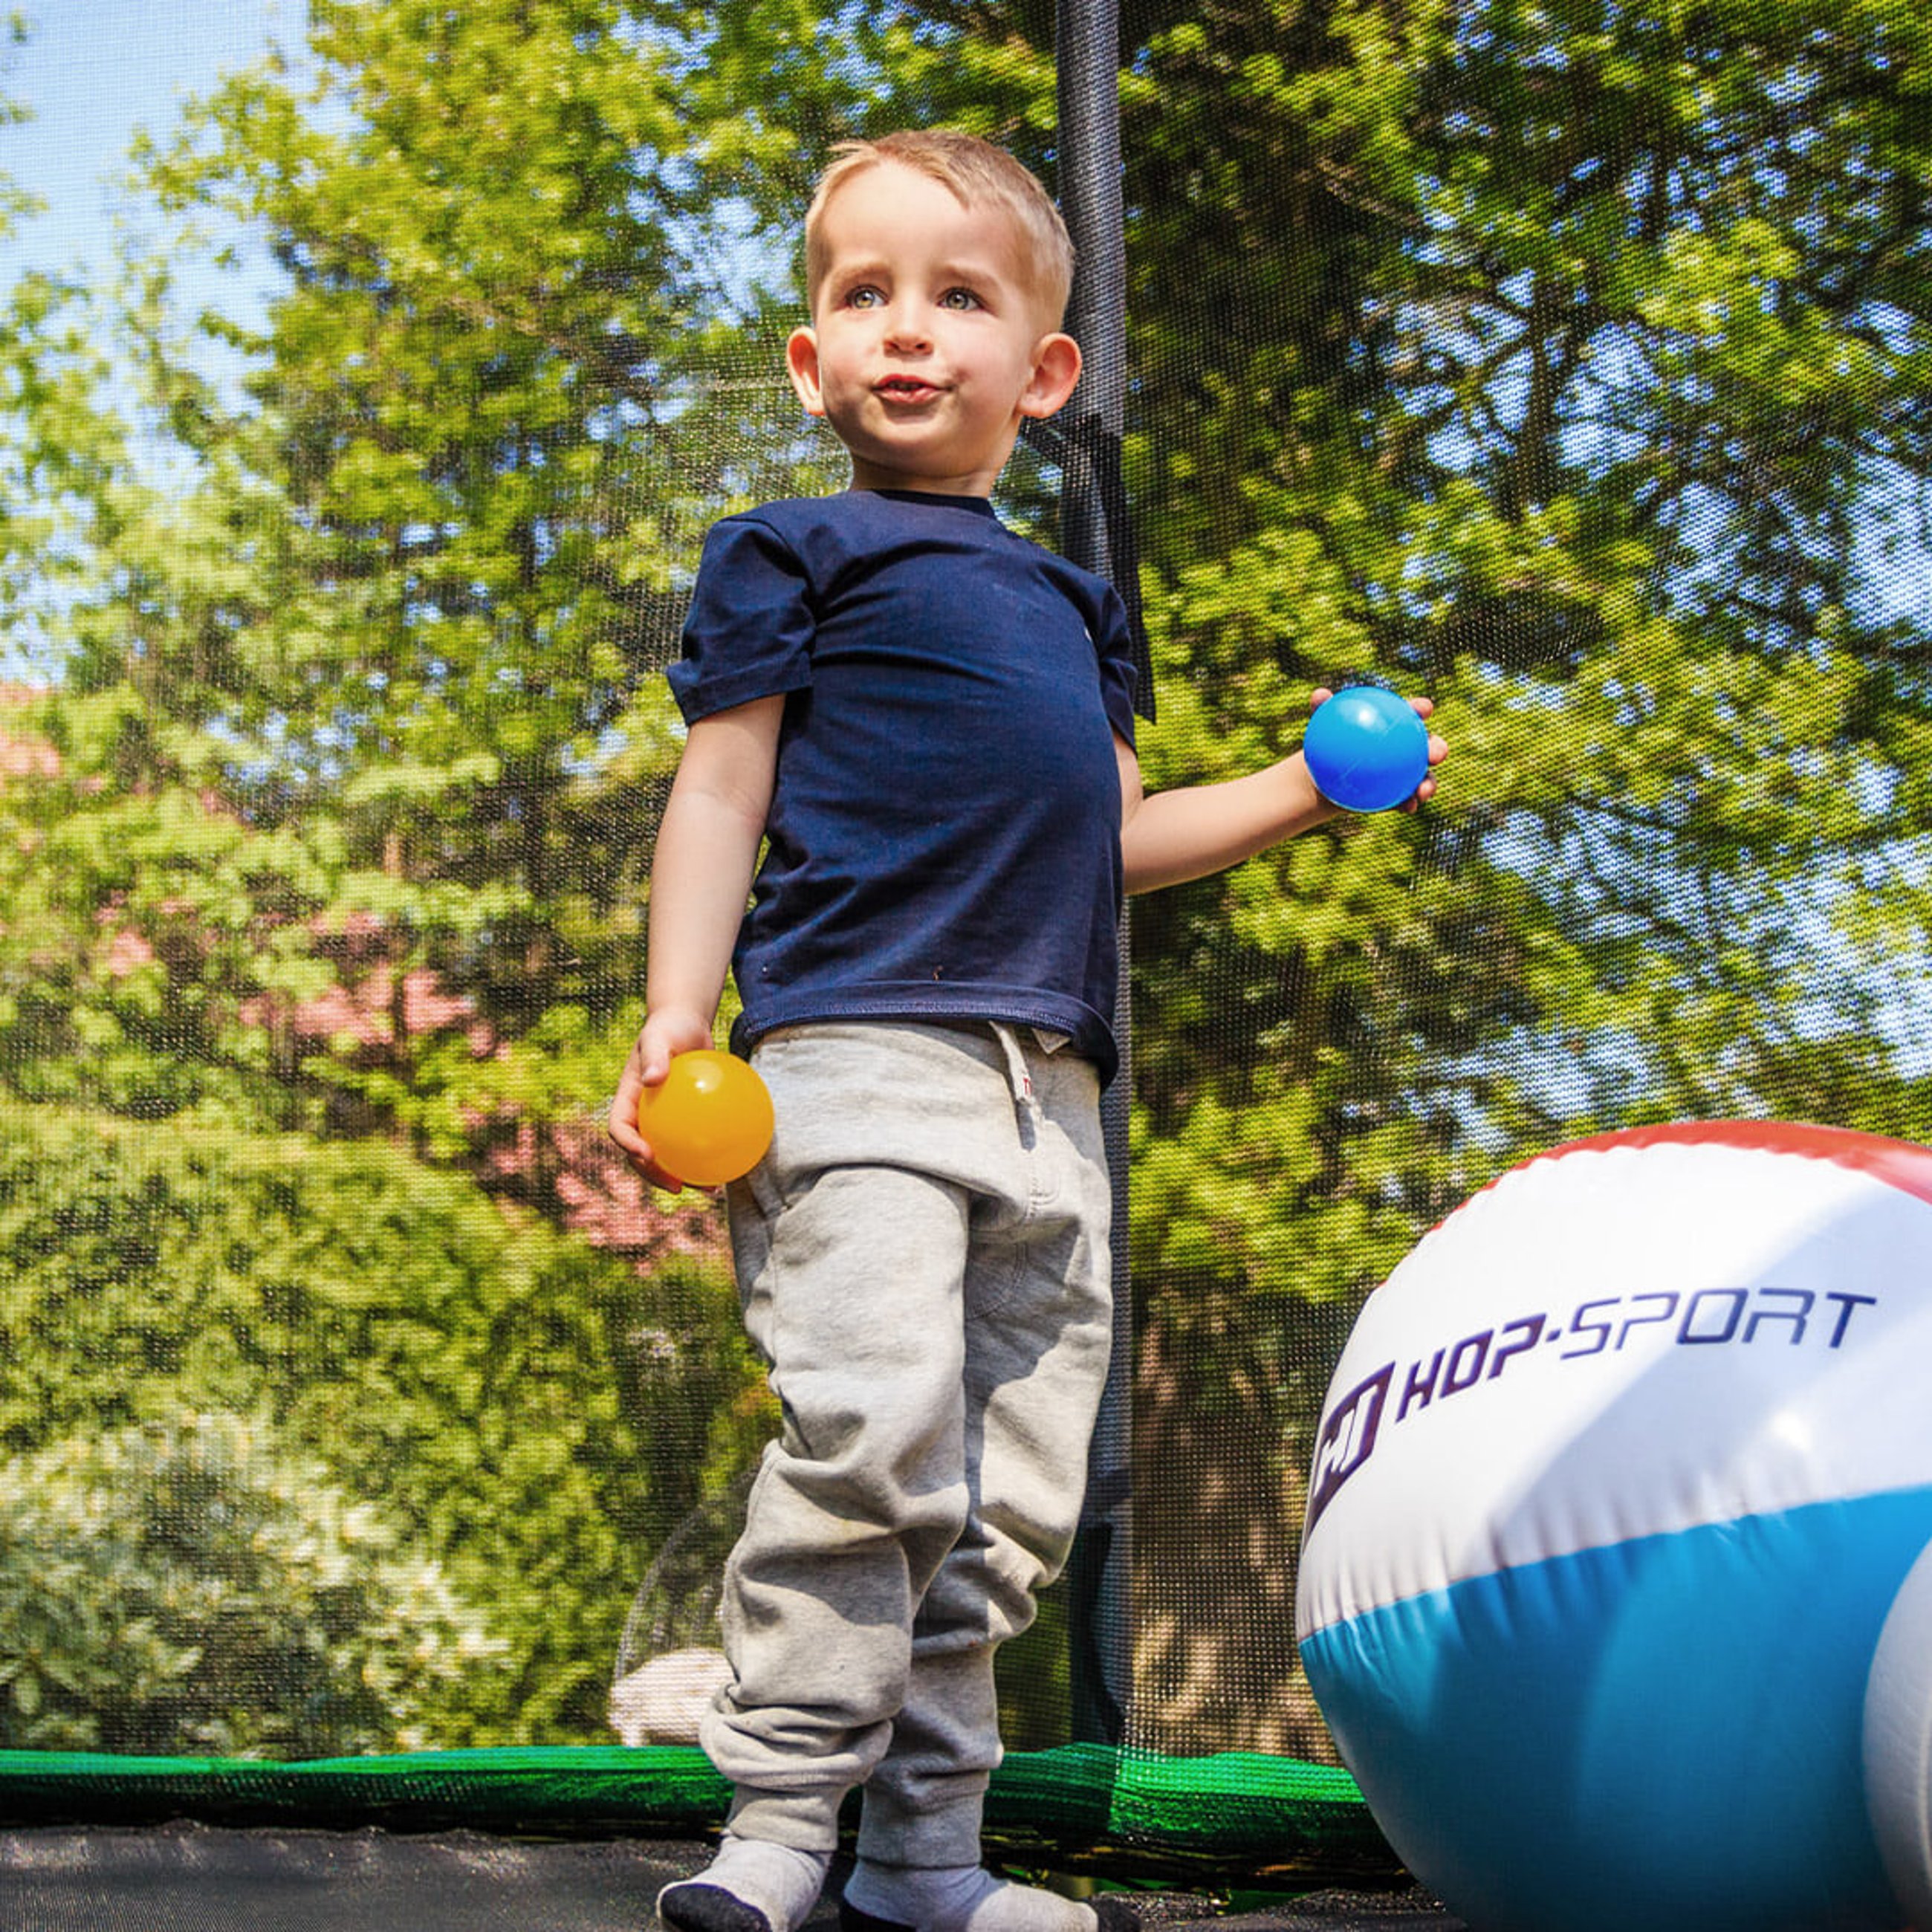 Kind spielt mit einem Ball während des Springens auf einem Hop-Sport Trampolin